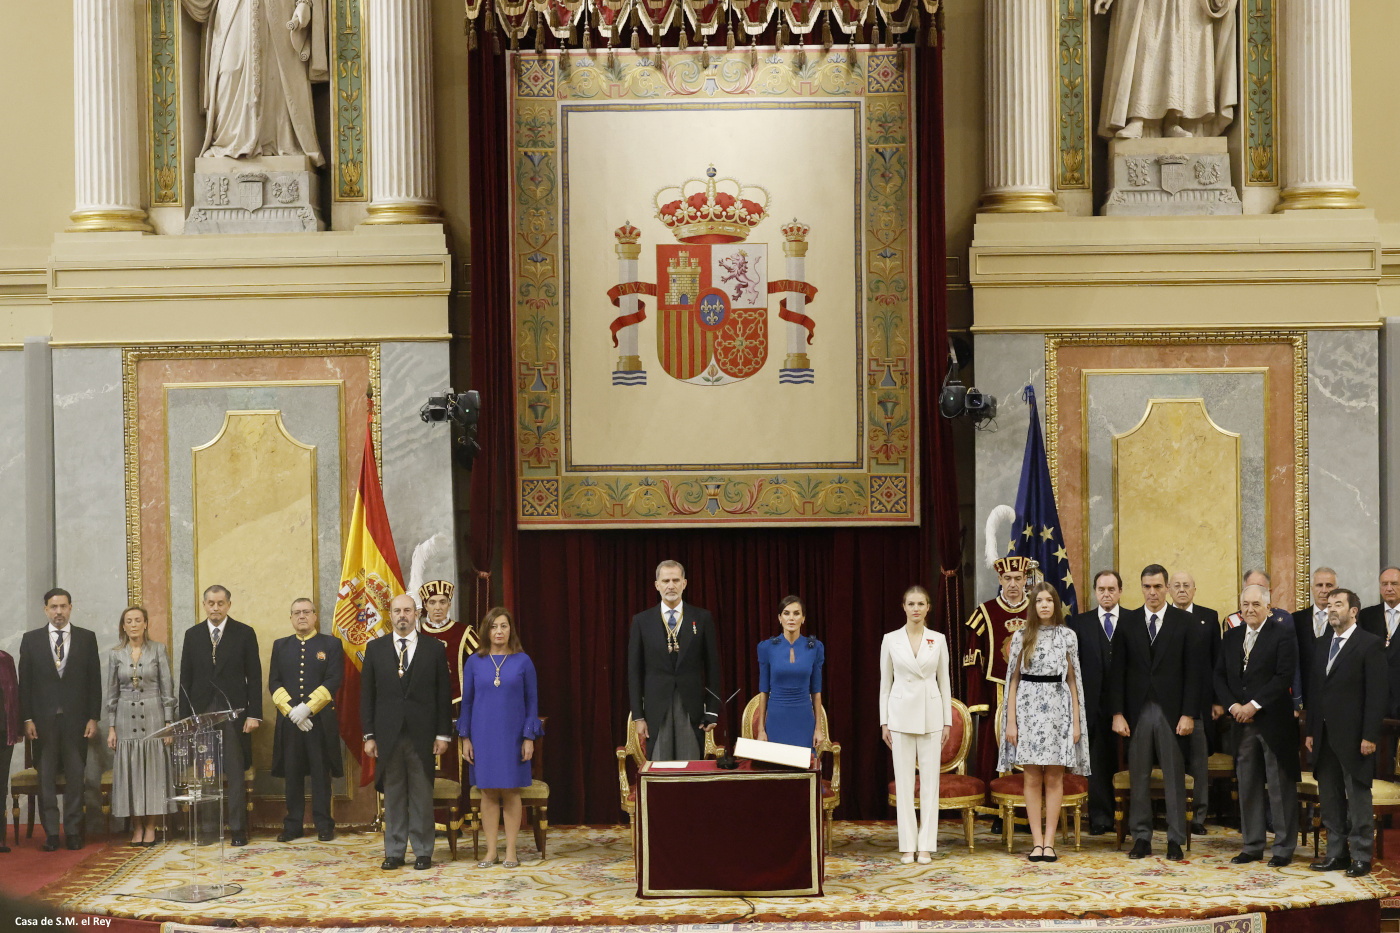 Juramento de la Constitución por la princesa de Asturias